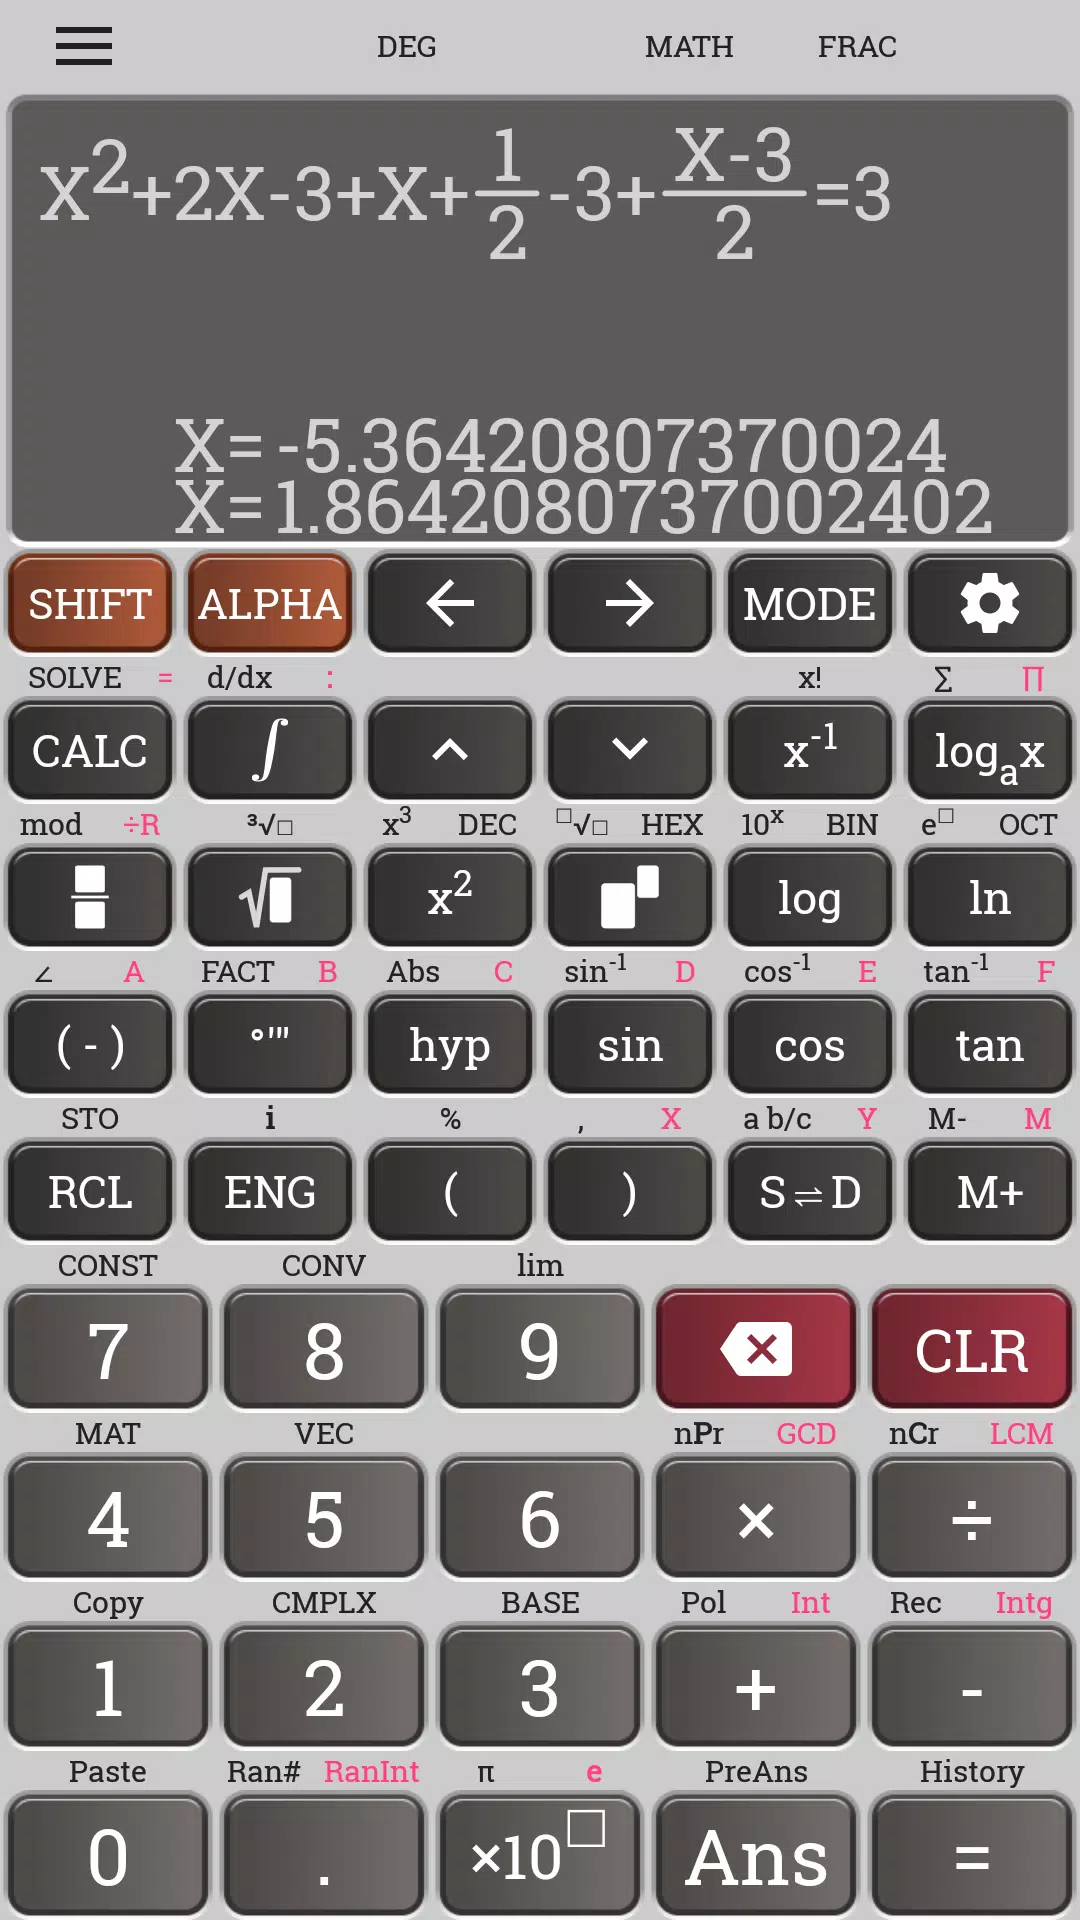 Descarga de APK de Calculadora científica casio fx 570 991 es plus para  Android